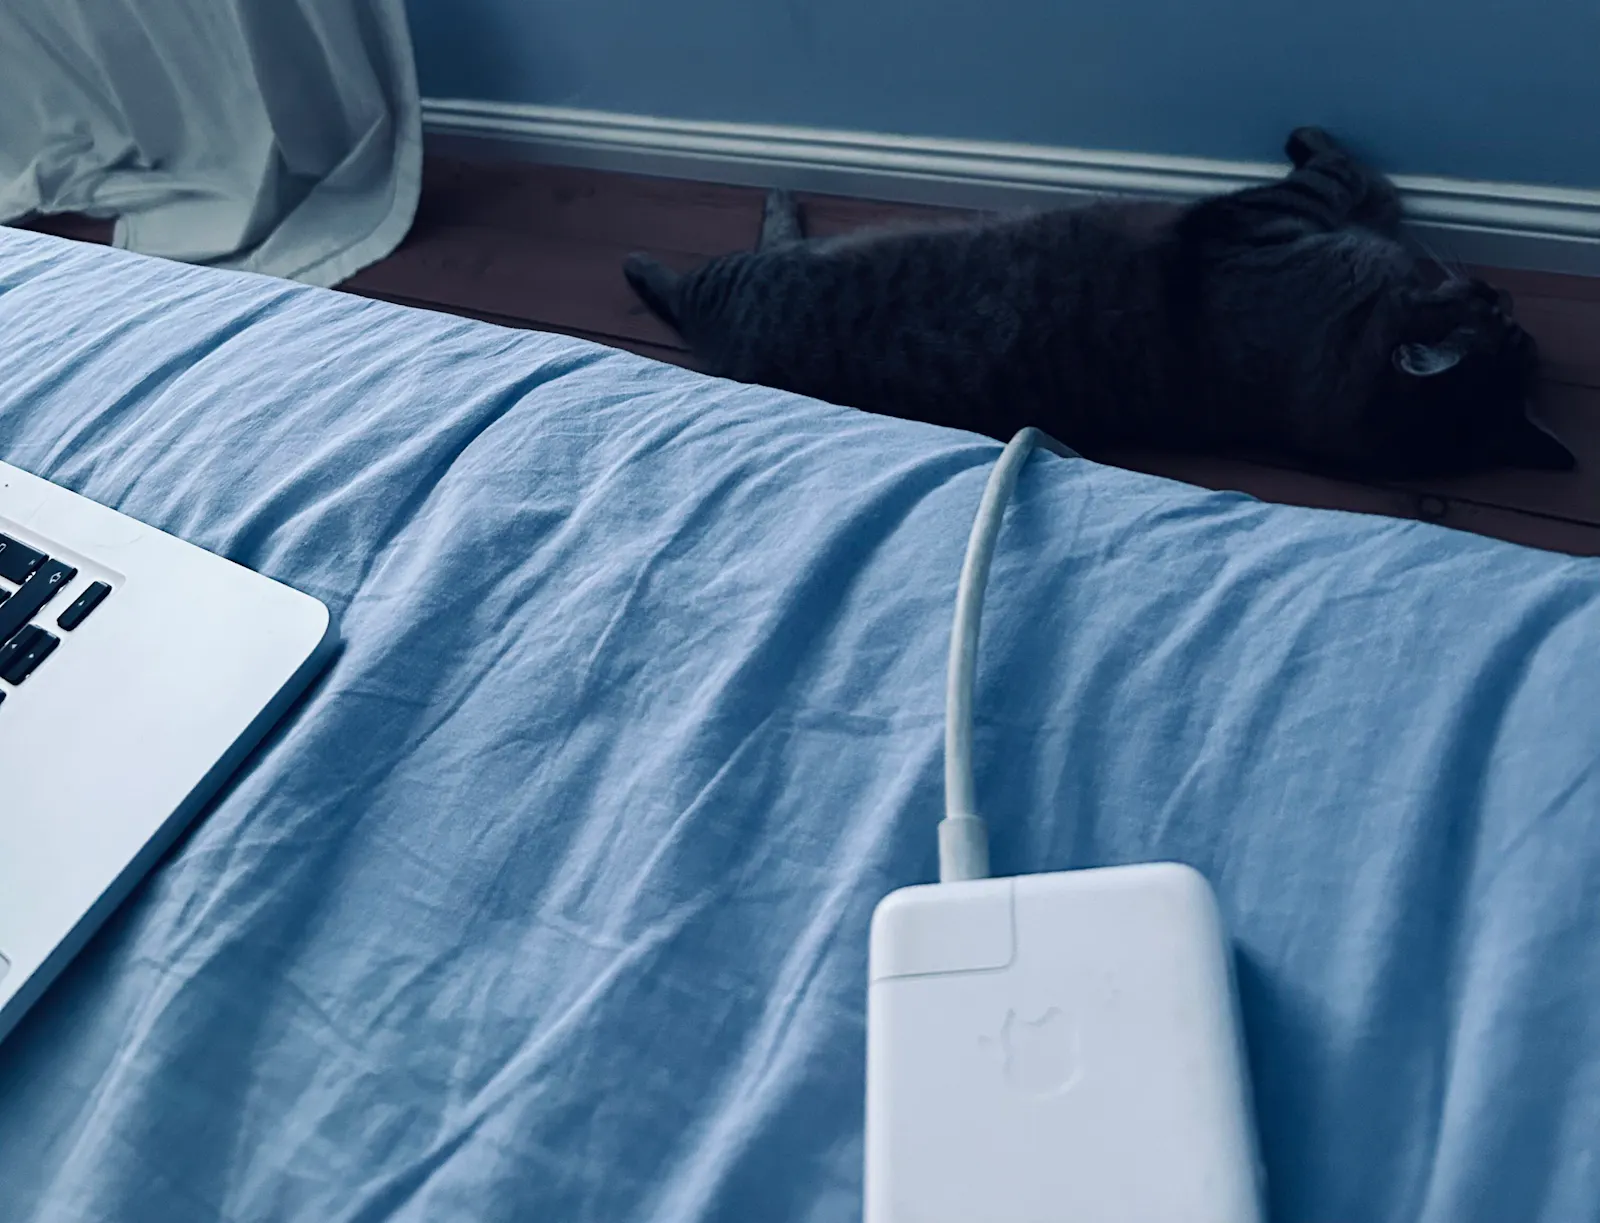 Katze liegt neben Bett. Im Bett sieht man Laptop.